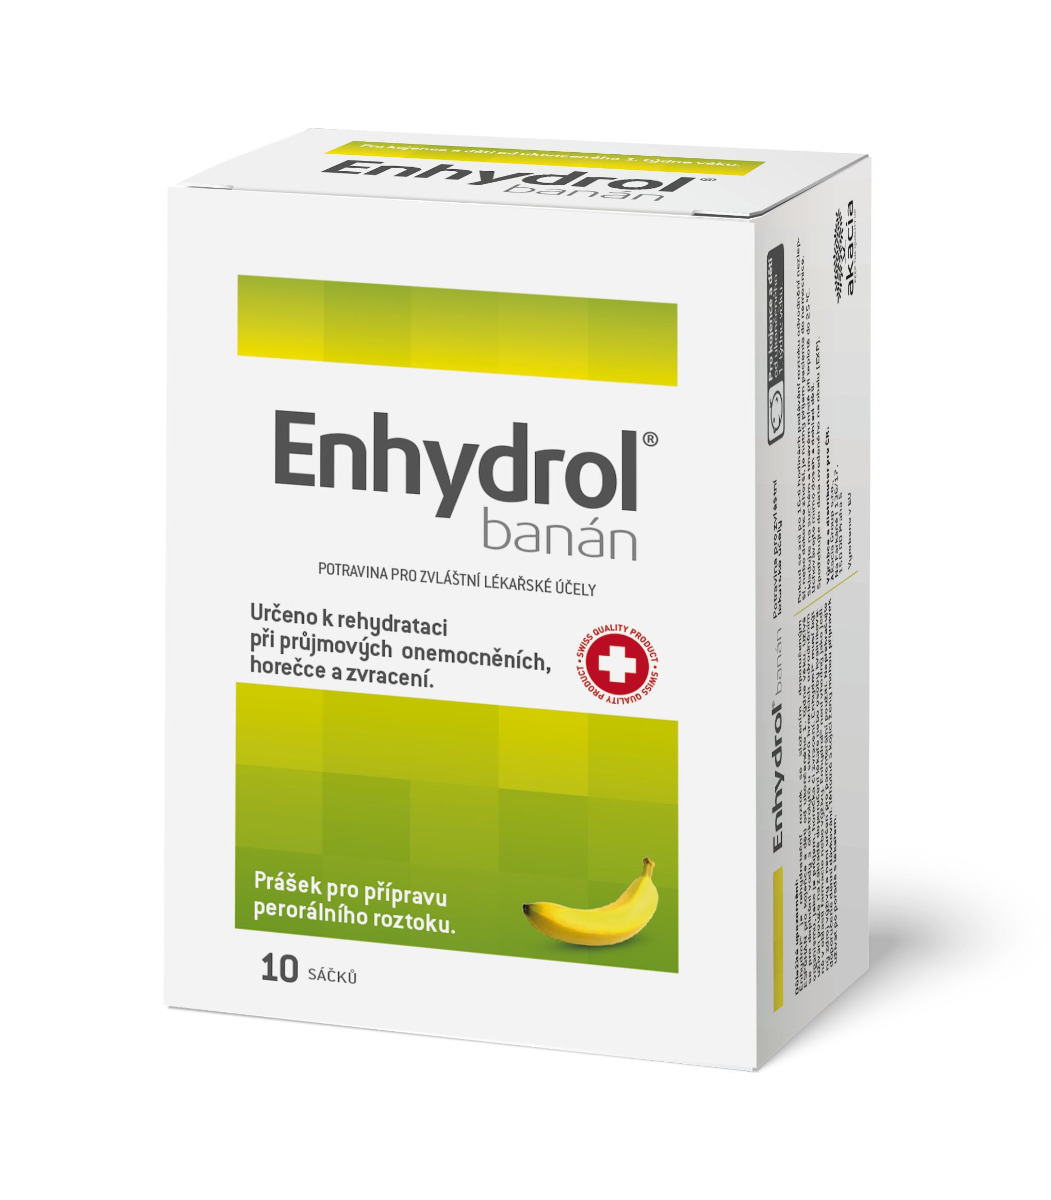 Enhydrol banán 10 sáčků Enhydrol